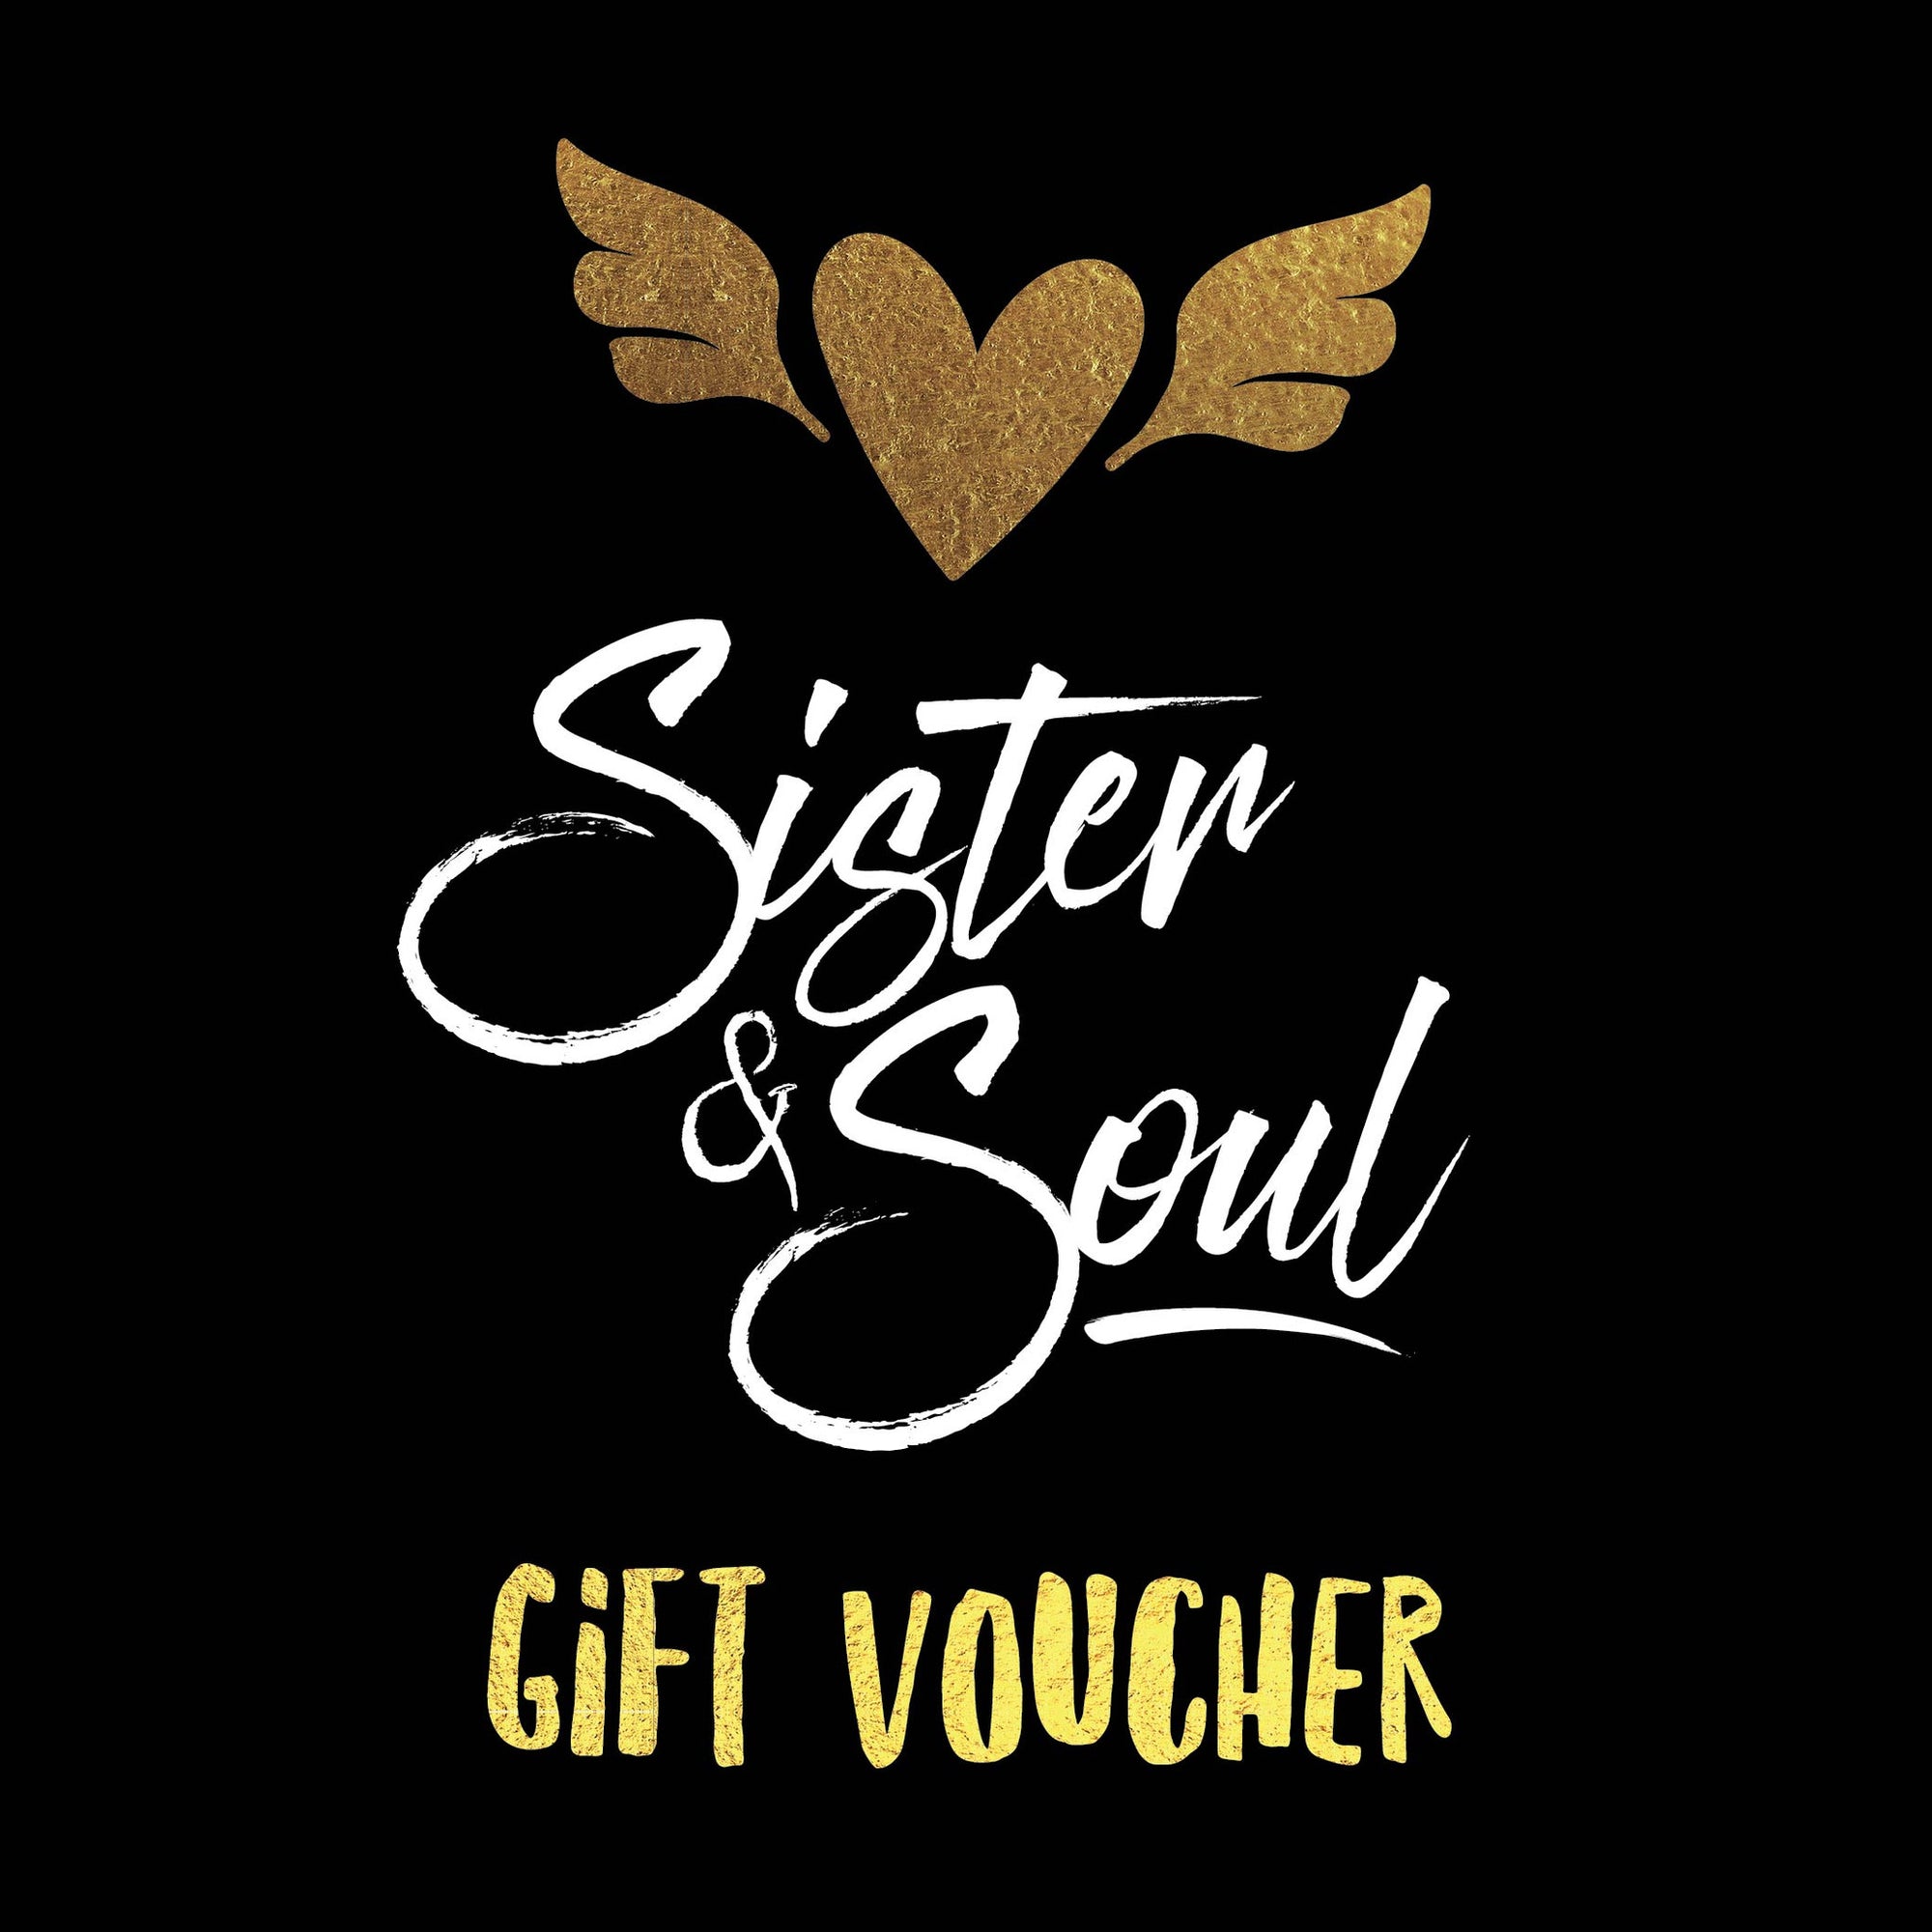 gift voucher for women